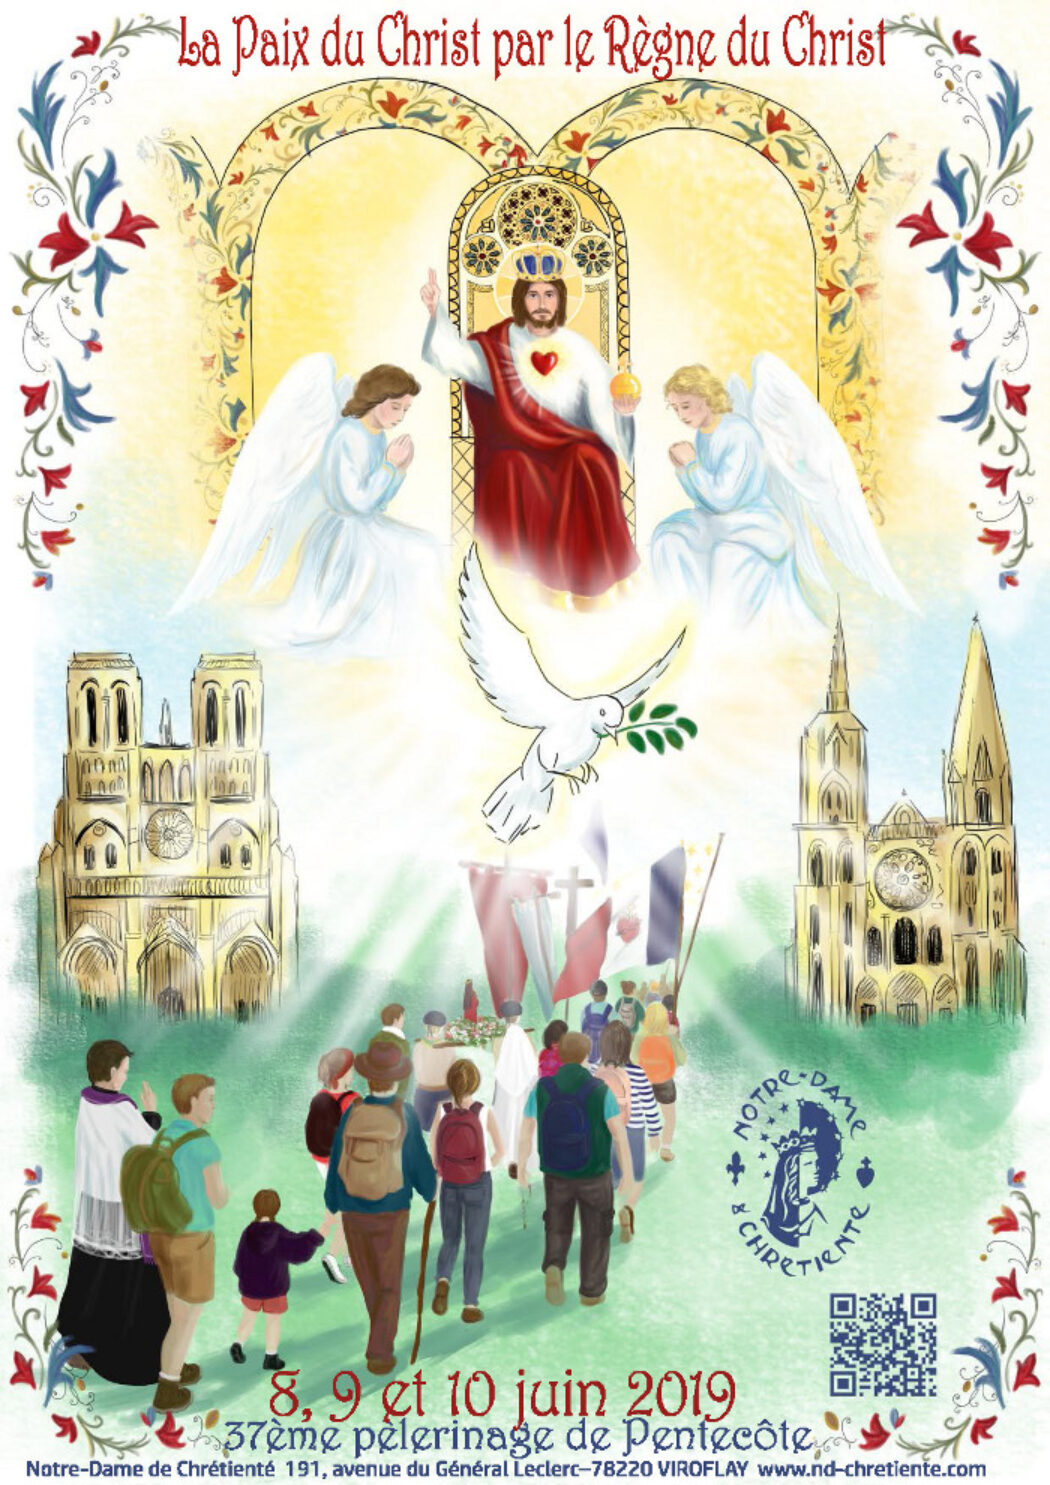 Voici l’affiche du 37e pèlerinage de Notre-Dame de Chrétienté